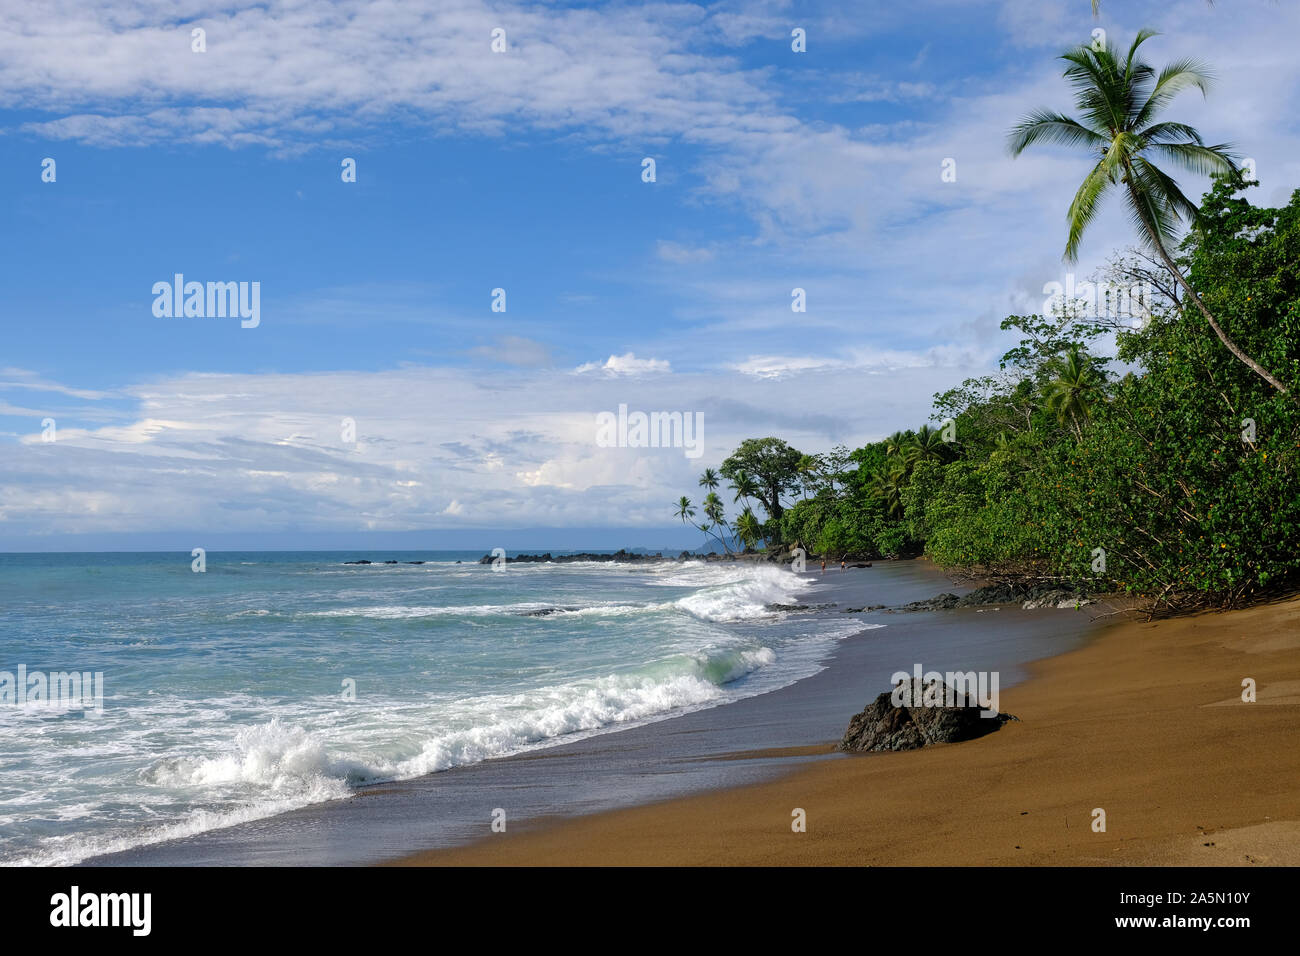 Wonderful Beaches - Costa Rica Drake Bay Beach Stock Photo